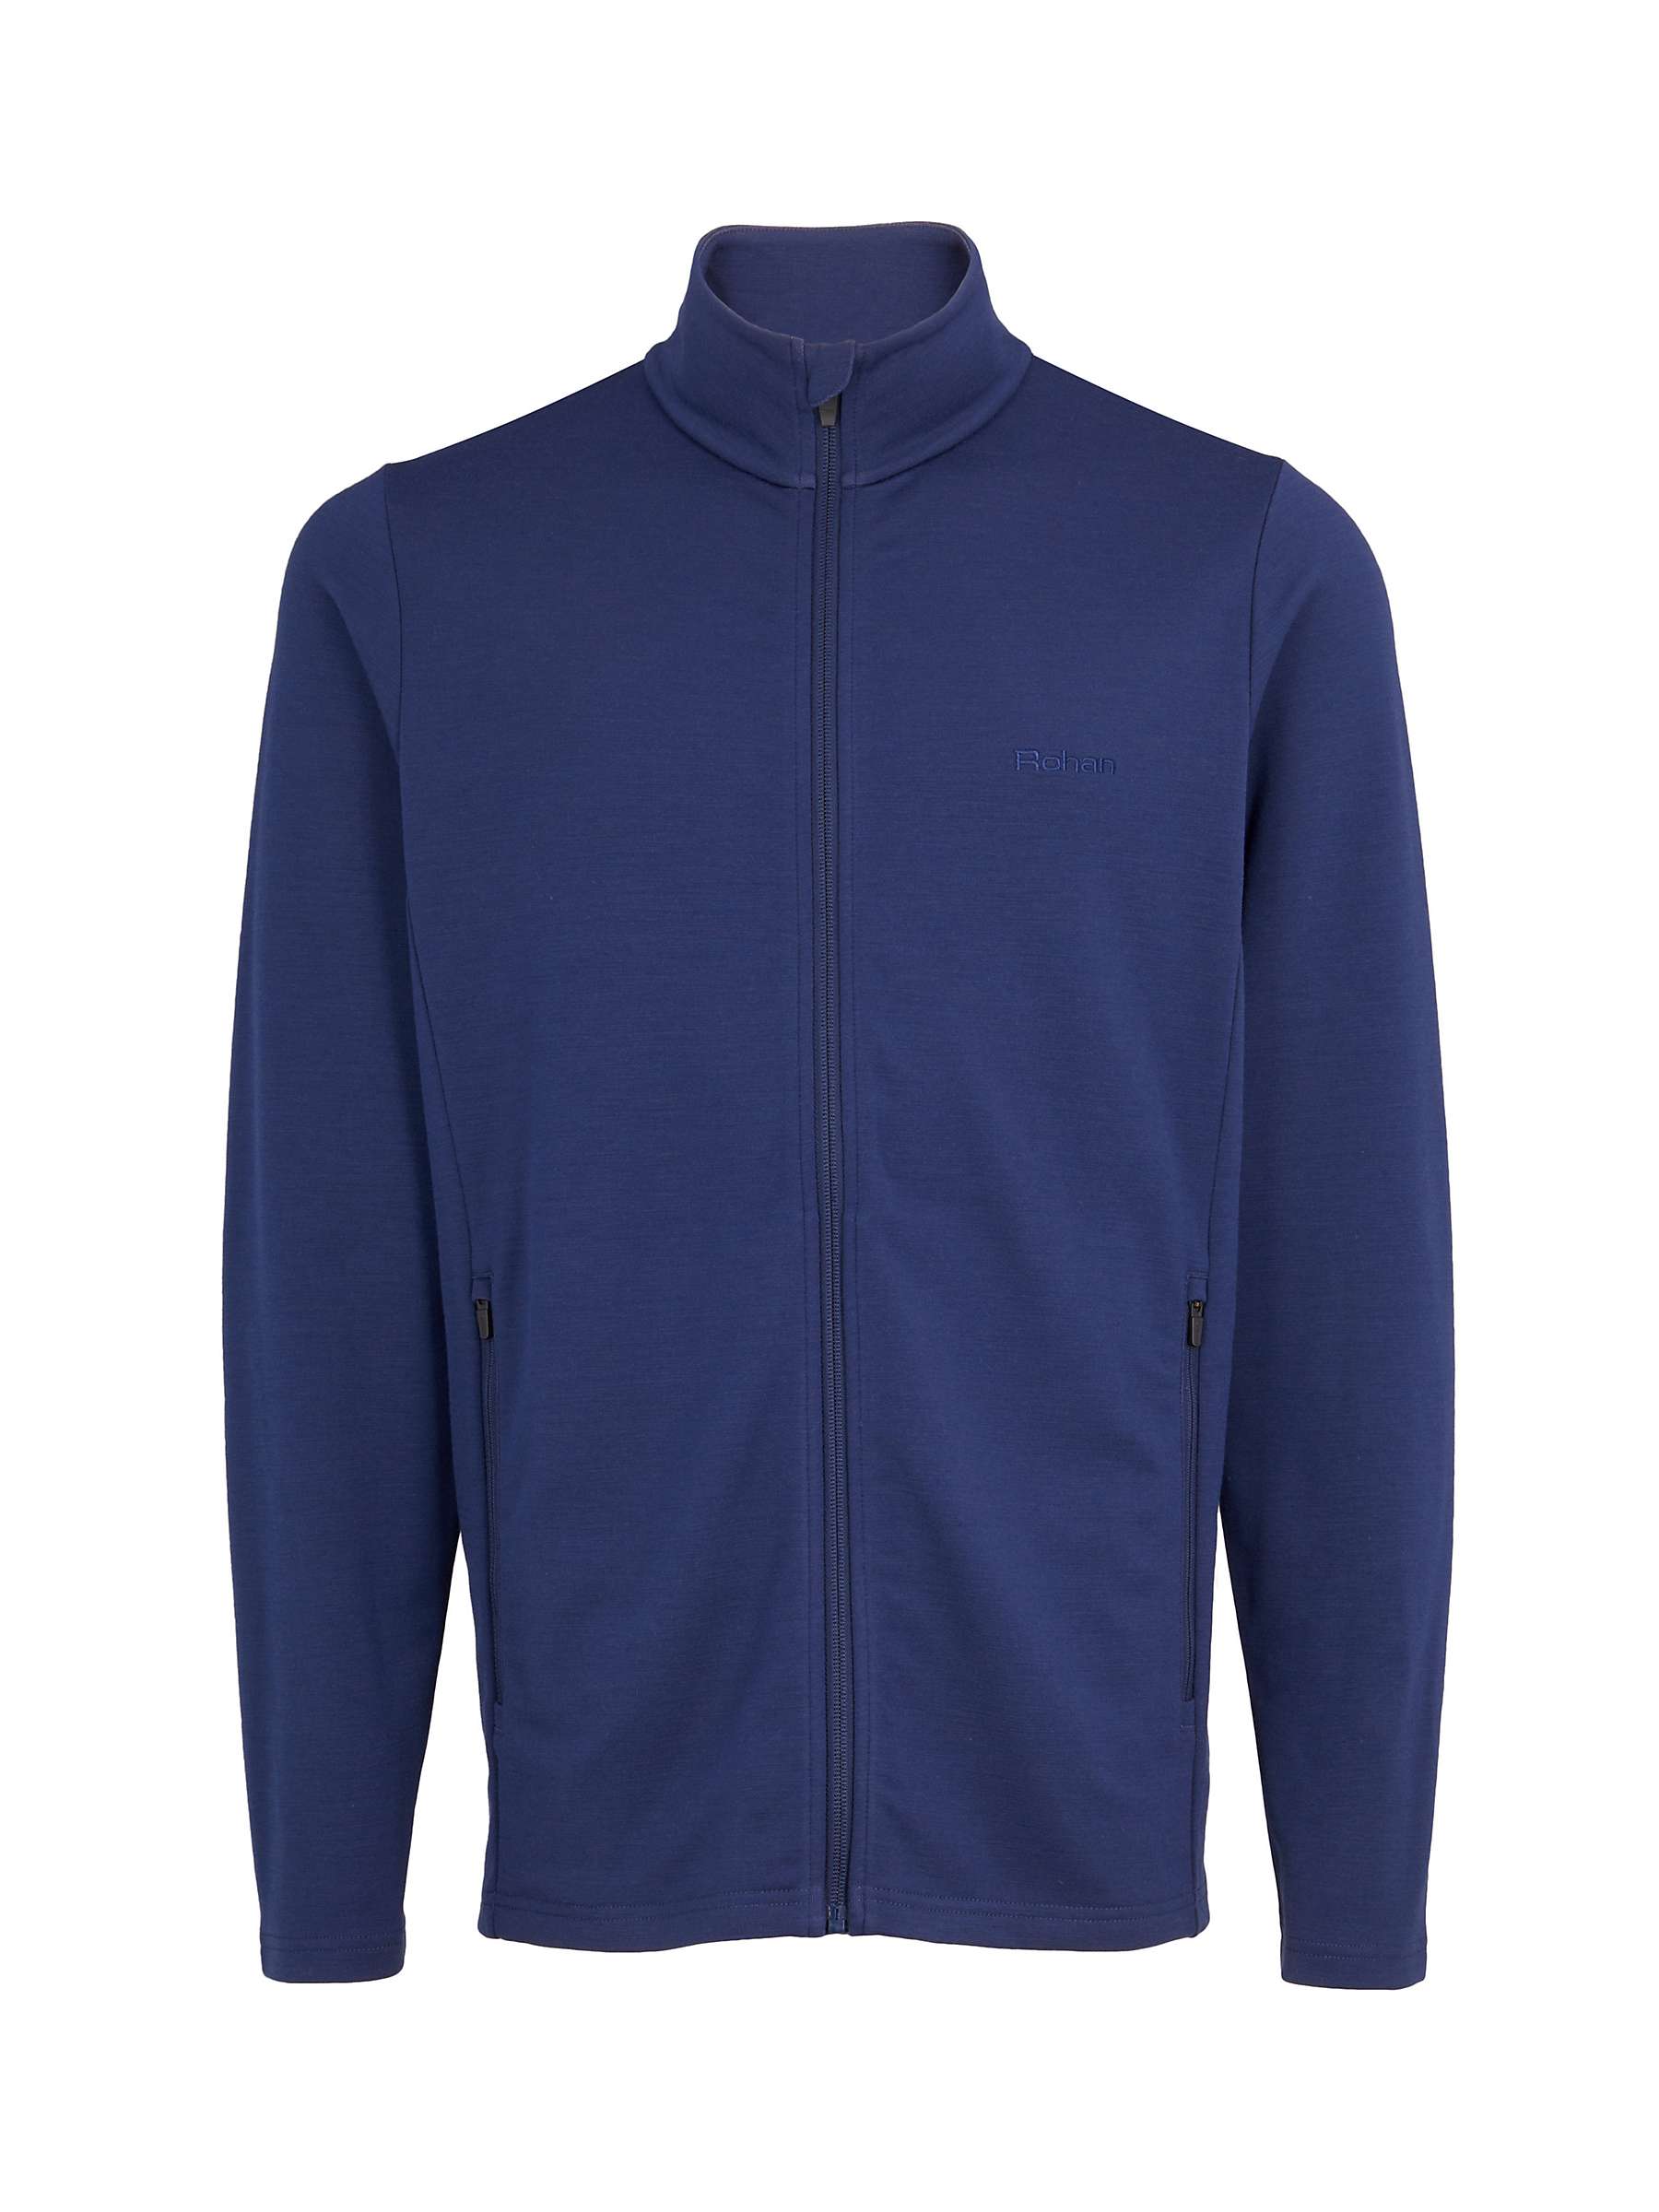 Buy Rohan Men's Radiant Merino Wool Blend Zip Up Fleece Jacket Online at johnlewis.com